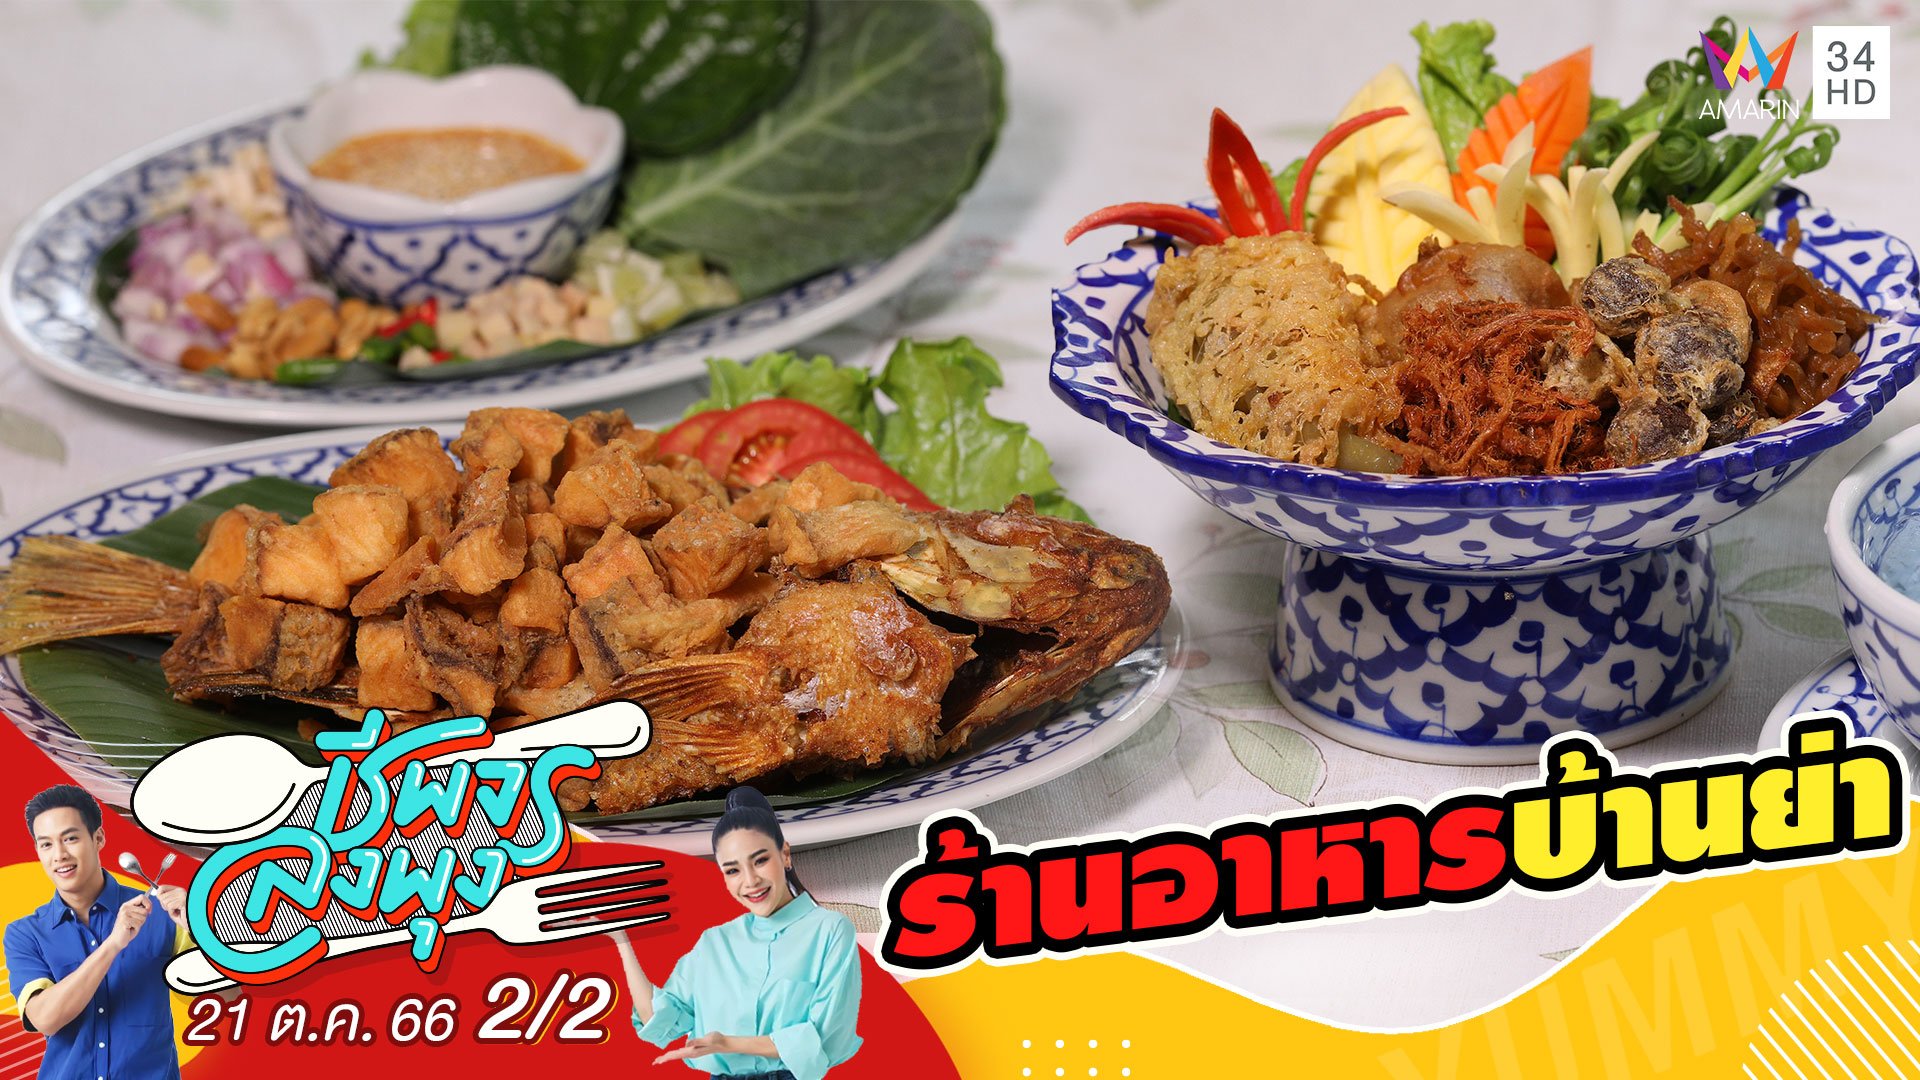 "ร้านอาหารบ้านย่า" ร้านอาหารหลากหลายเมนูอาหารไทยแท้ๆ | ชีพจรลงพุง | 21 ต.ค. 66 (2/2) | AMARIN TVHD34